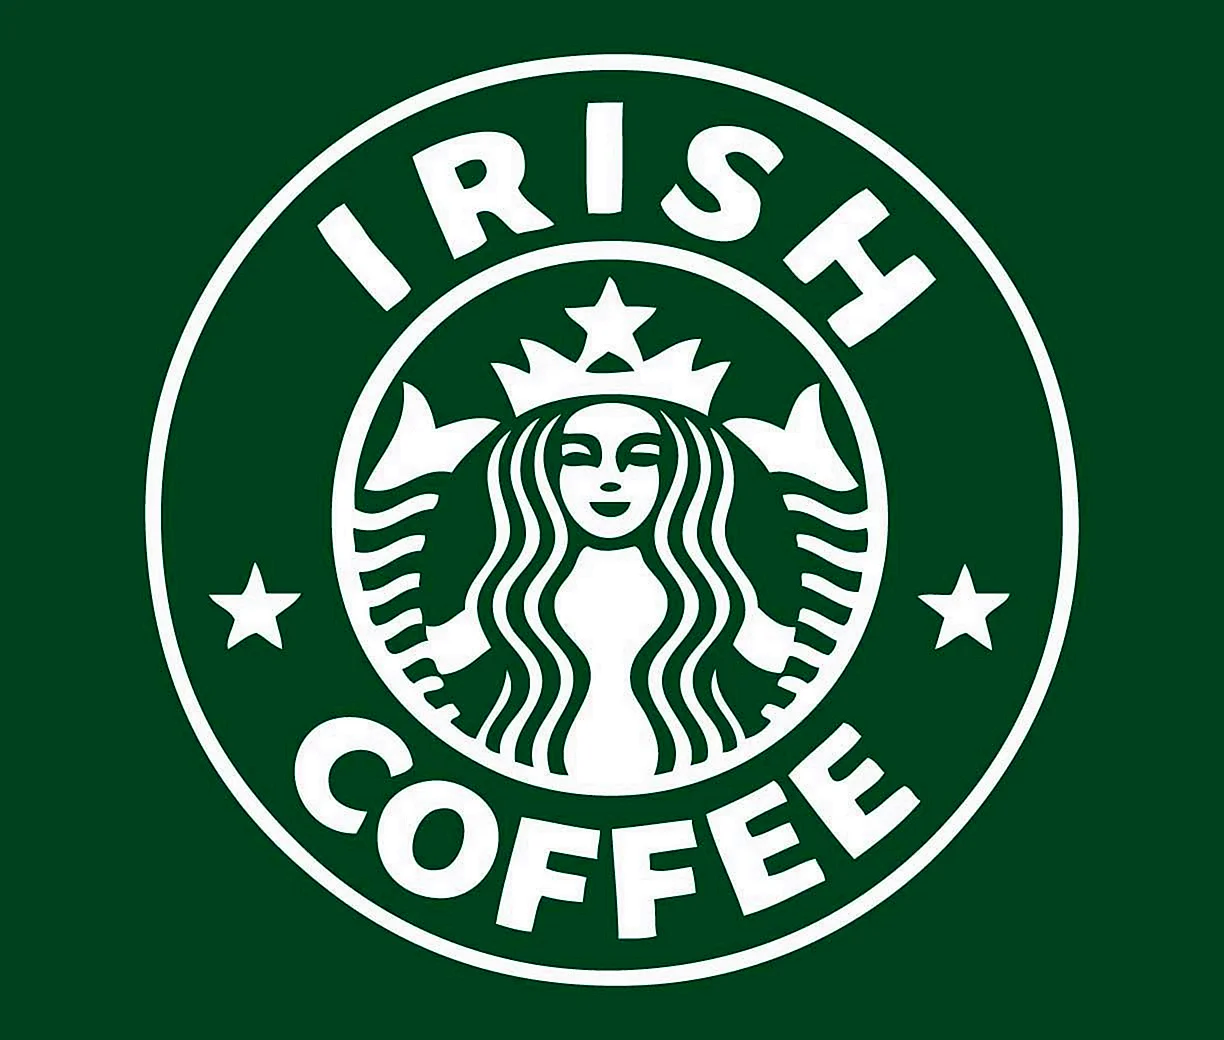 Старбакс кофе лого